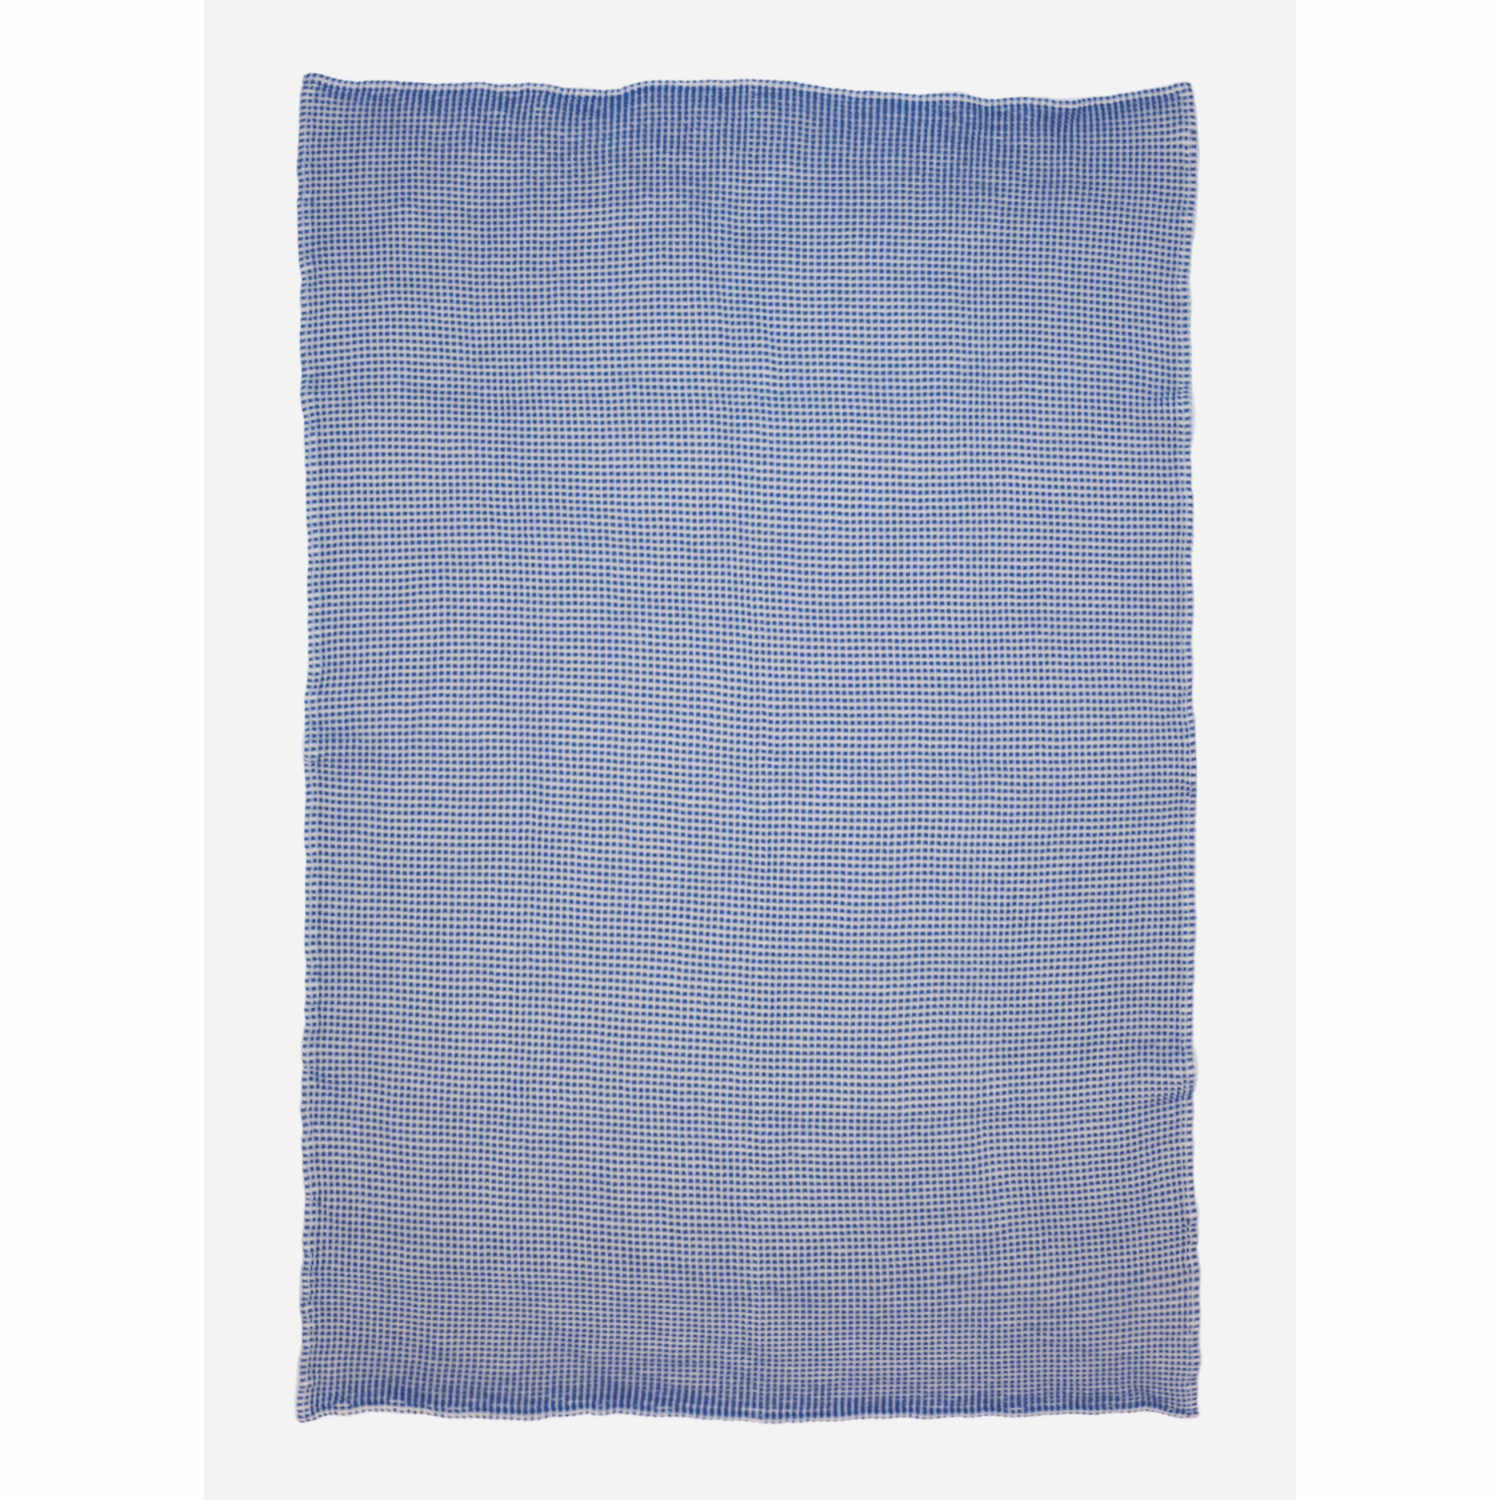 Seca Tuch, Farbe blue von Sula